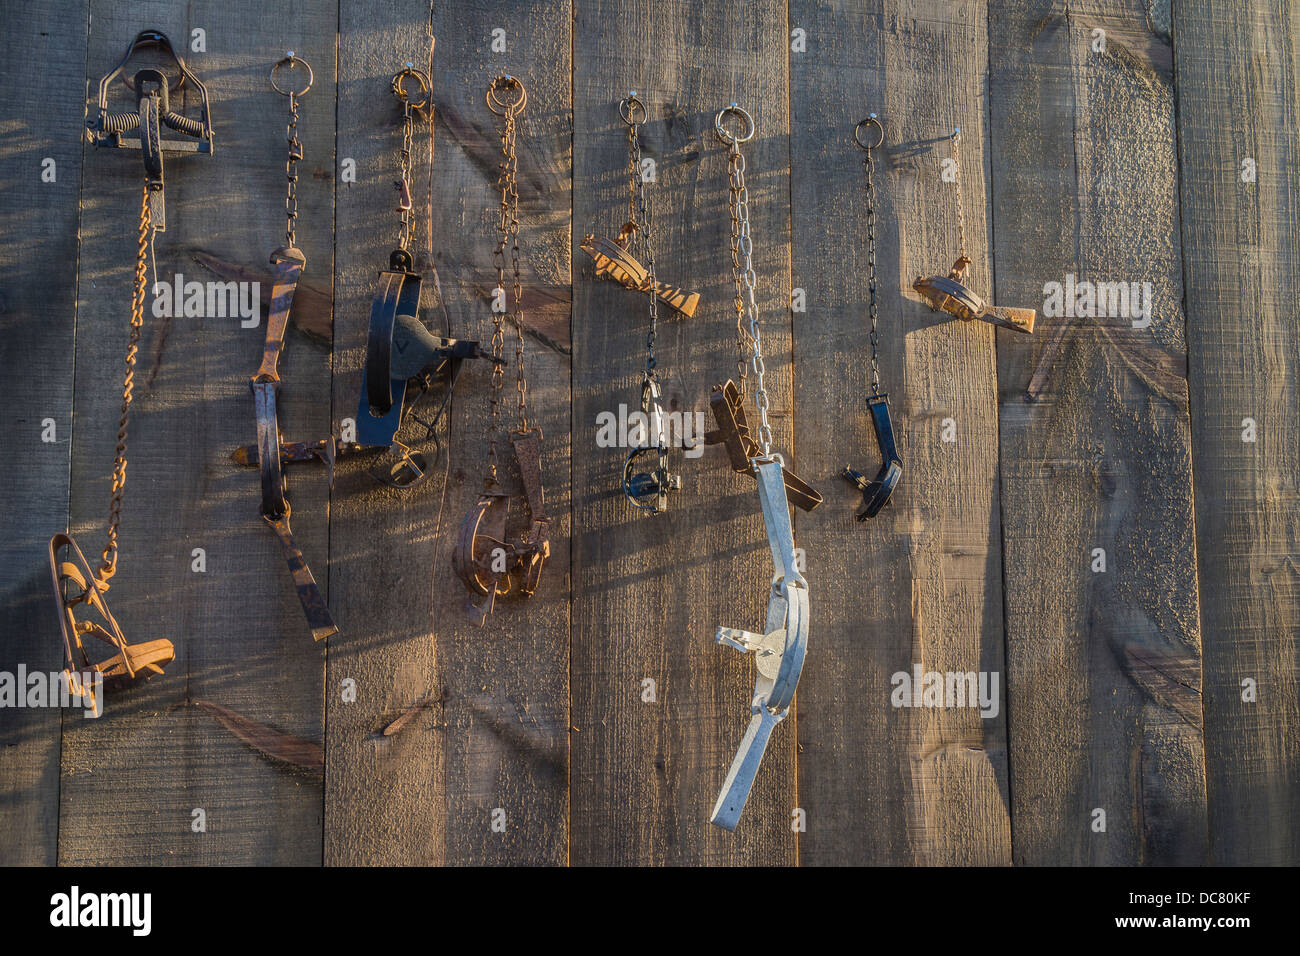 Une variété de pied pièges pendent à des clous sur le côté d'un hangar en bois. Banque D'Images